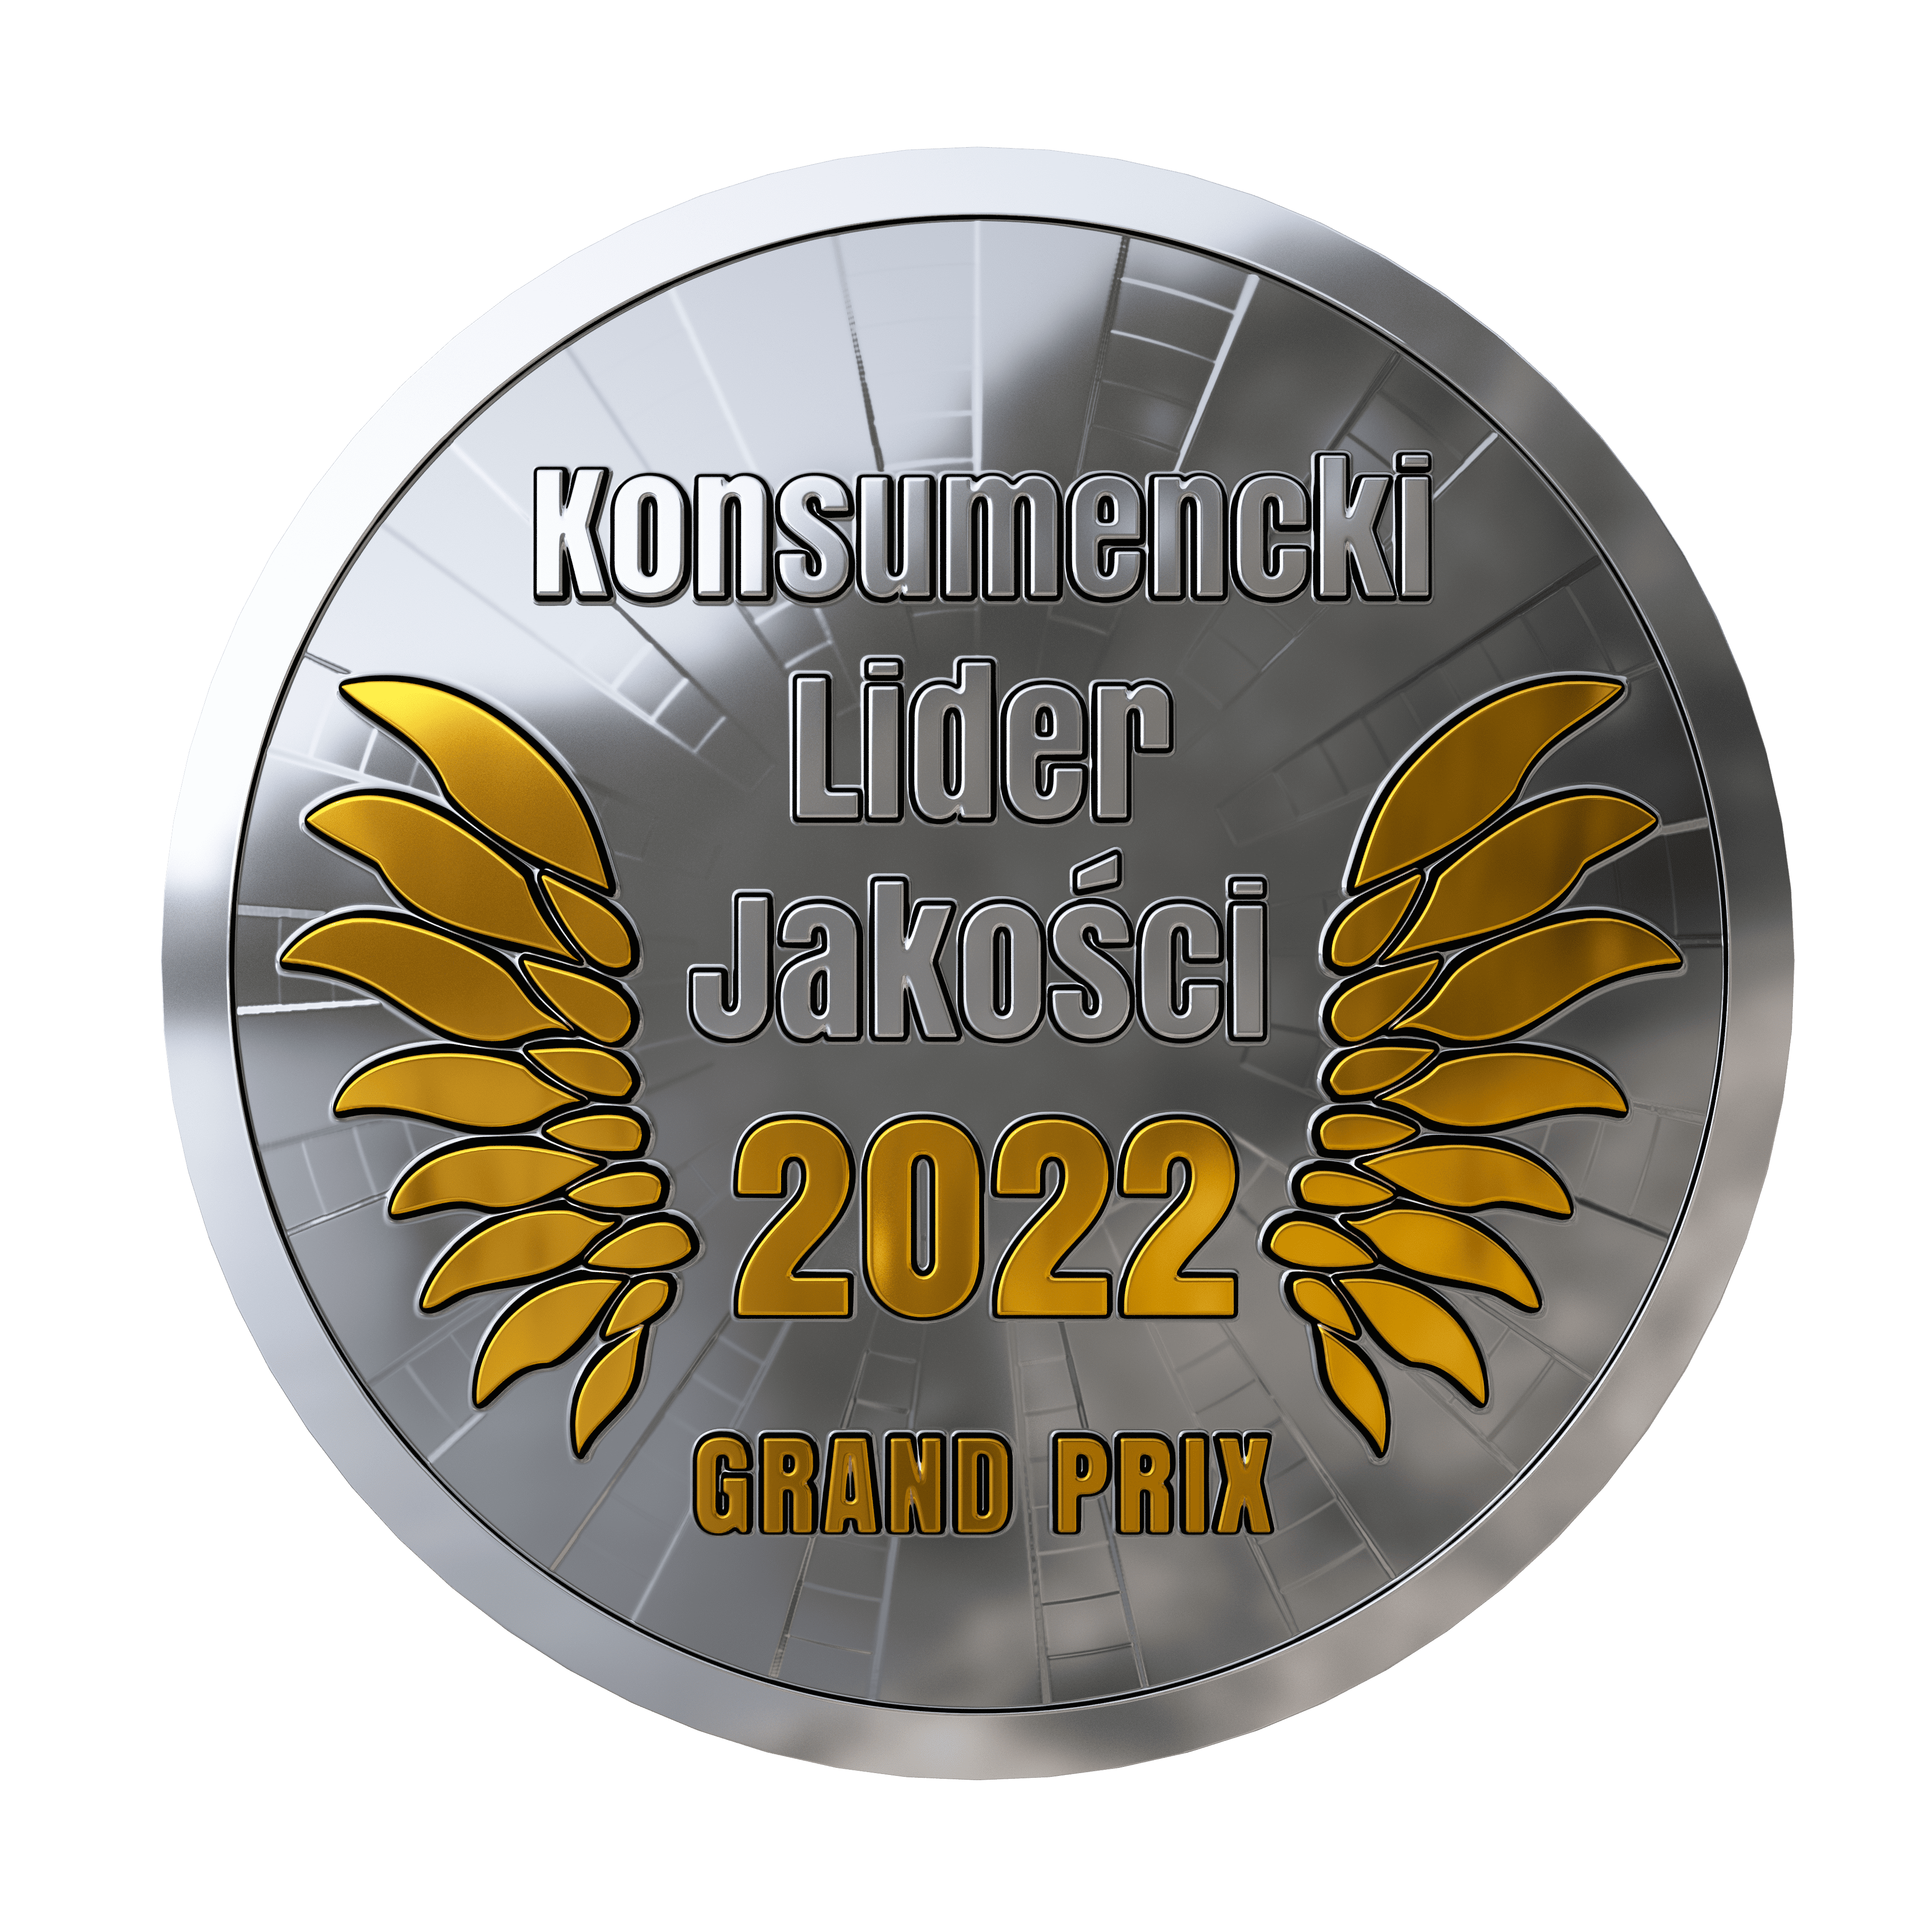 Bosch Termotechnika – marka uhonorowana nagrodą specjalną, godłem Konsumencki Lider Jakości - GRAND PRIX 2022